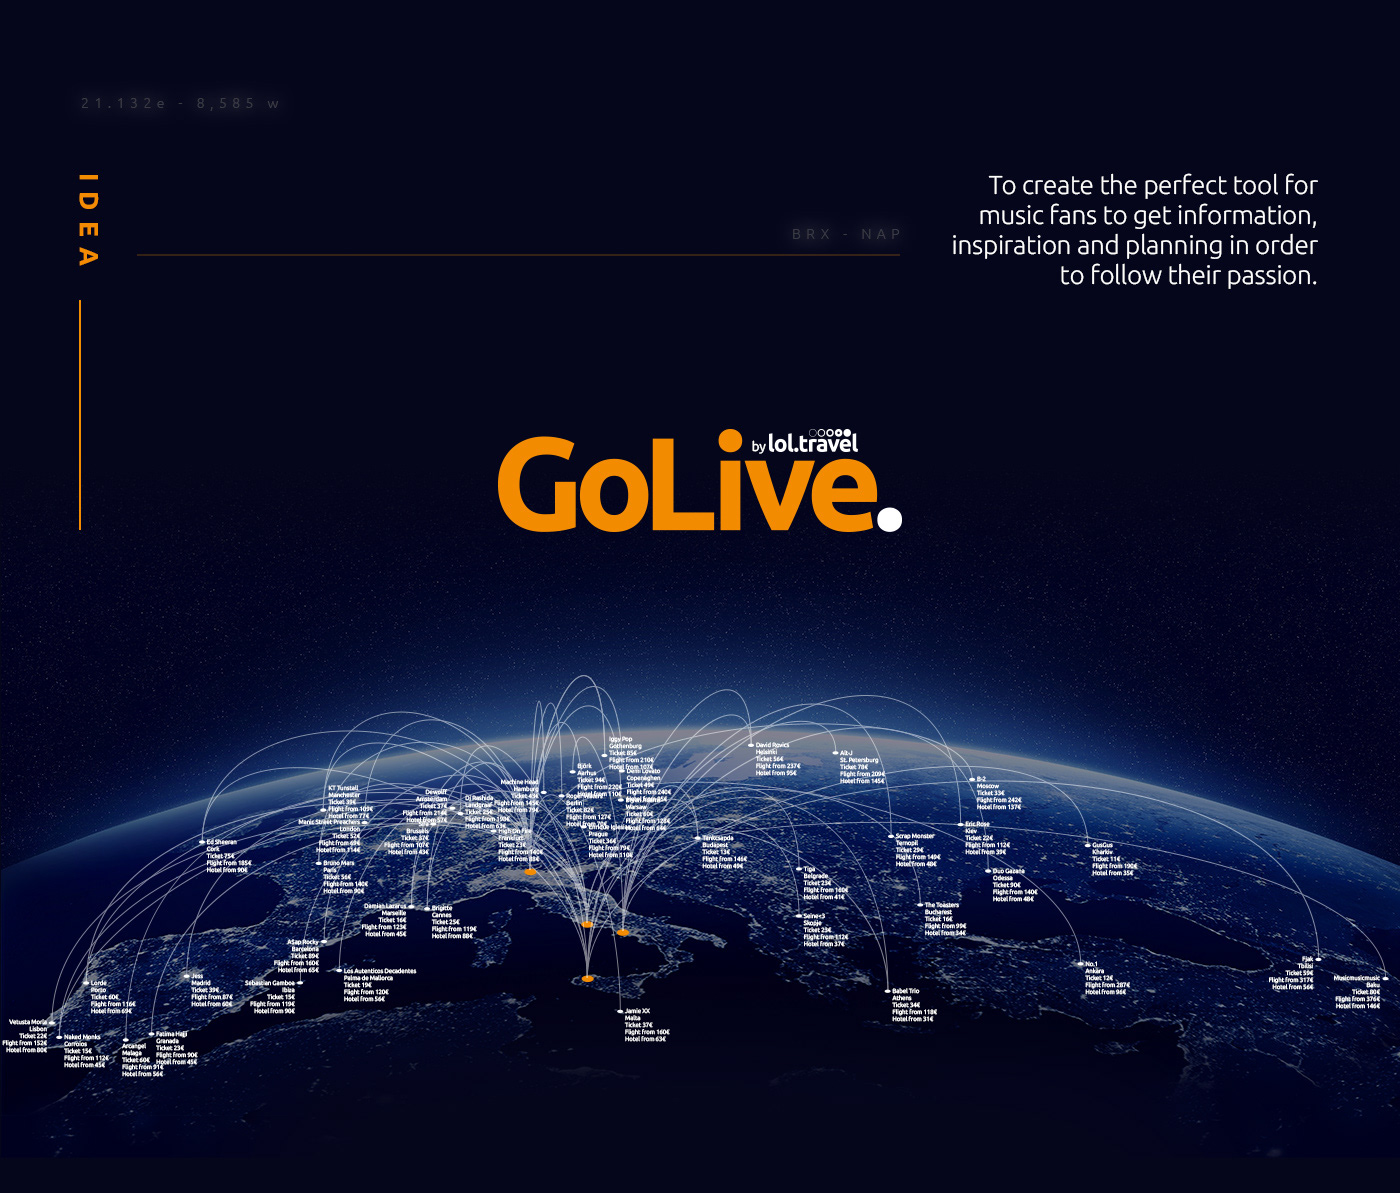 Golive Travel search engine concert live music activation Responsive Deloitte Digital deloitte